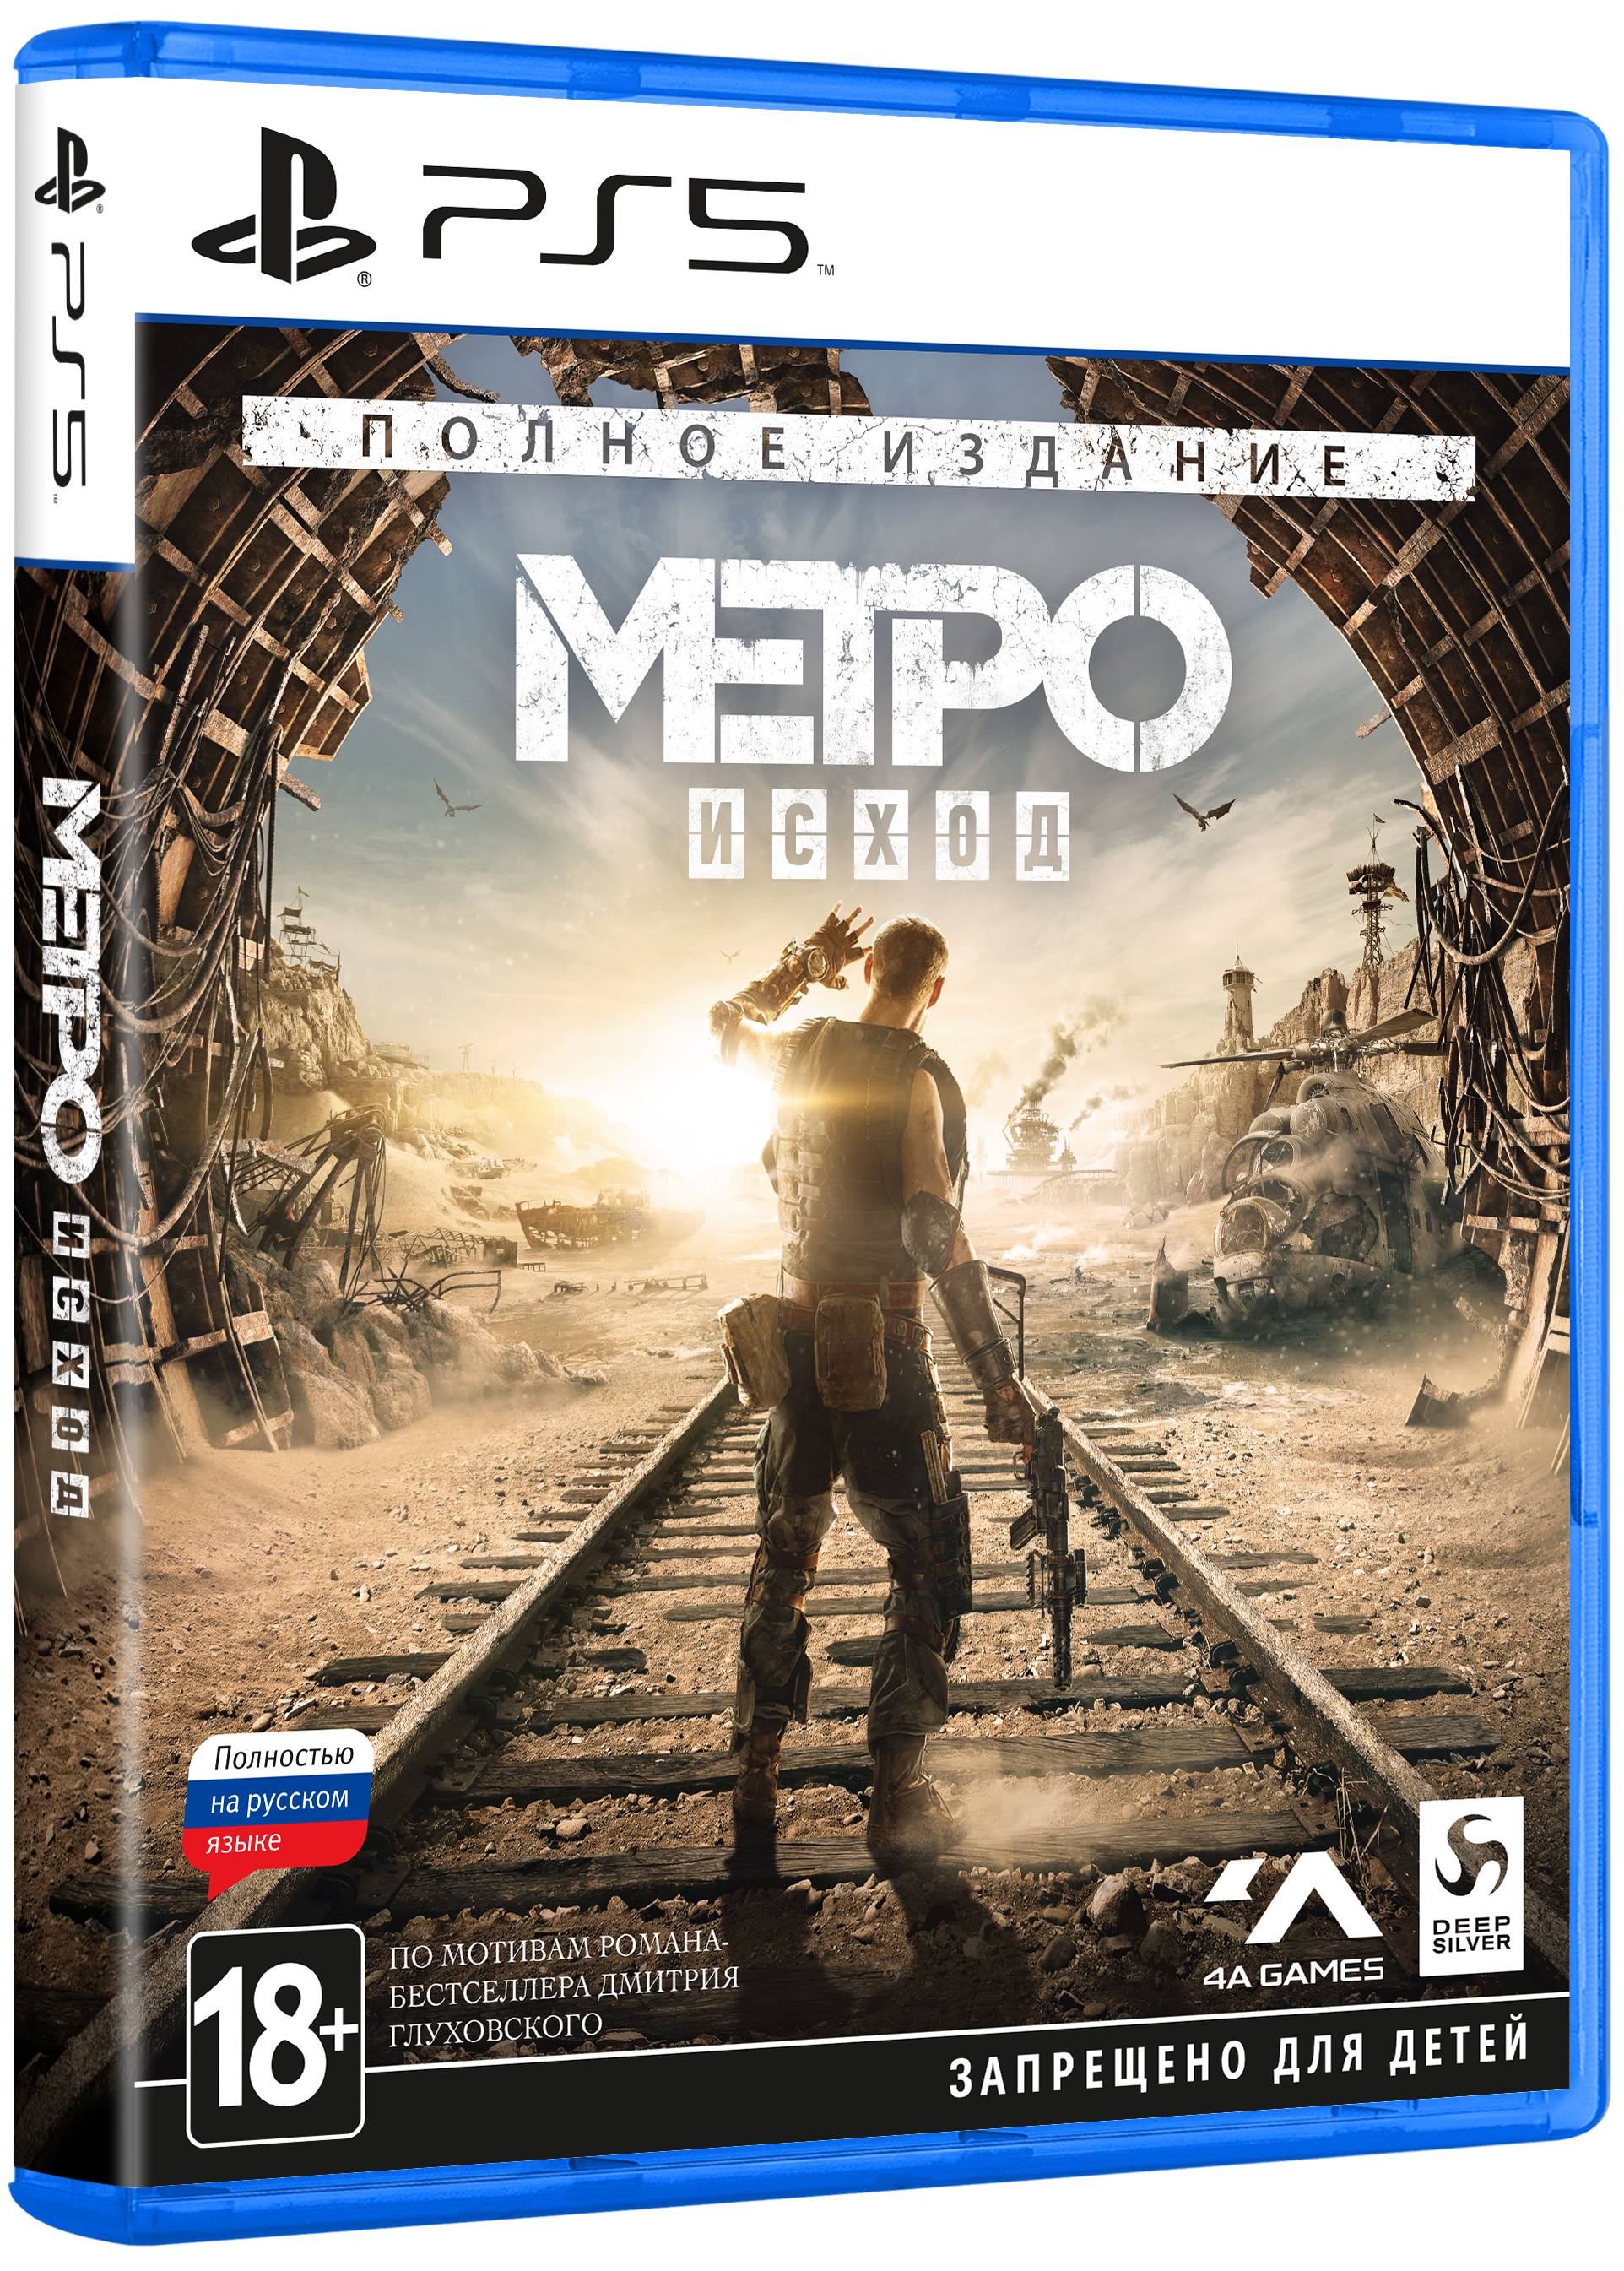 Метро исход пс. Метро исход на пс4. Метро исход диск Xbox one. Metro Exodus ps4. Metro Exodus Gold Edition ps4.